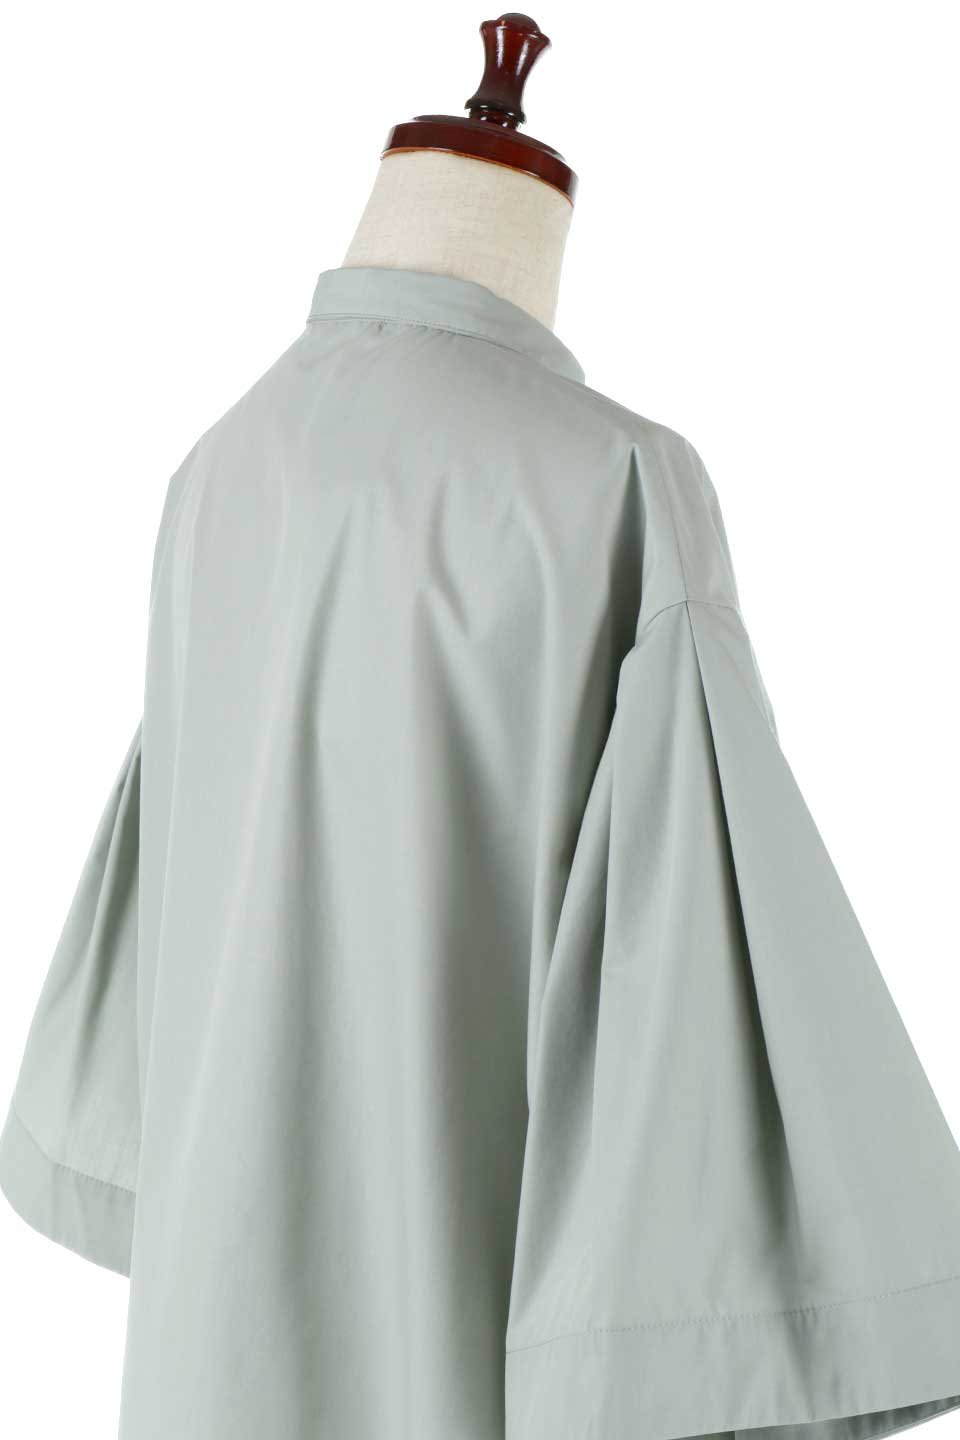 FlareHalfSleeveShirtsフレアスリーブ・五分袖シャツ大人カジュアルに最適な海外ファッションのothers（その他インポートアイテム）のトップスやシャツ・ブラウス。春夏に着たい半袖シャツをフレアスリーブにしたアイテム。サラッとしてなめらかな質感のシャツ生地を使用。/main-15